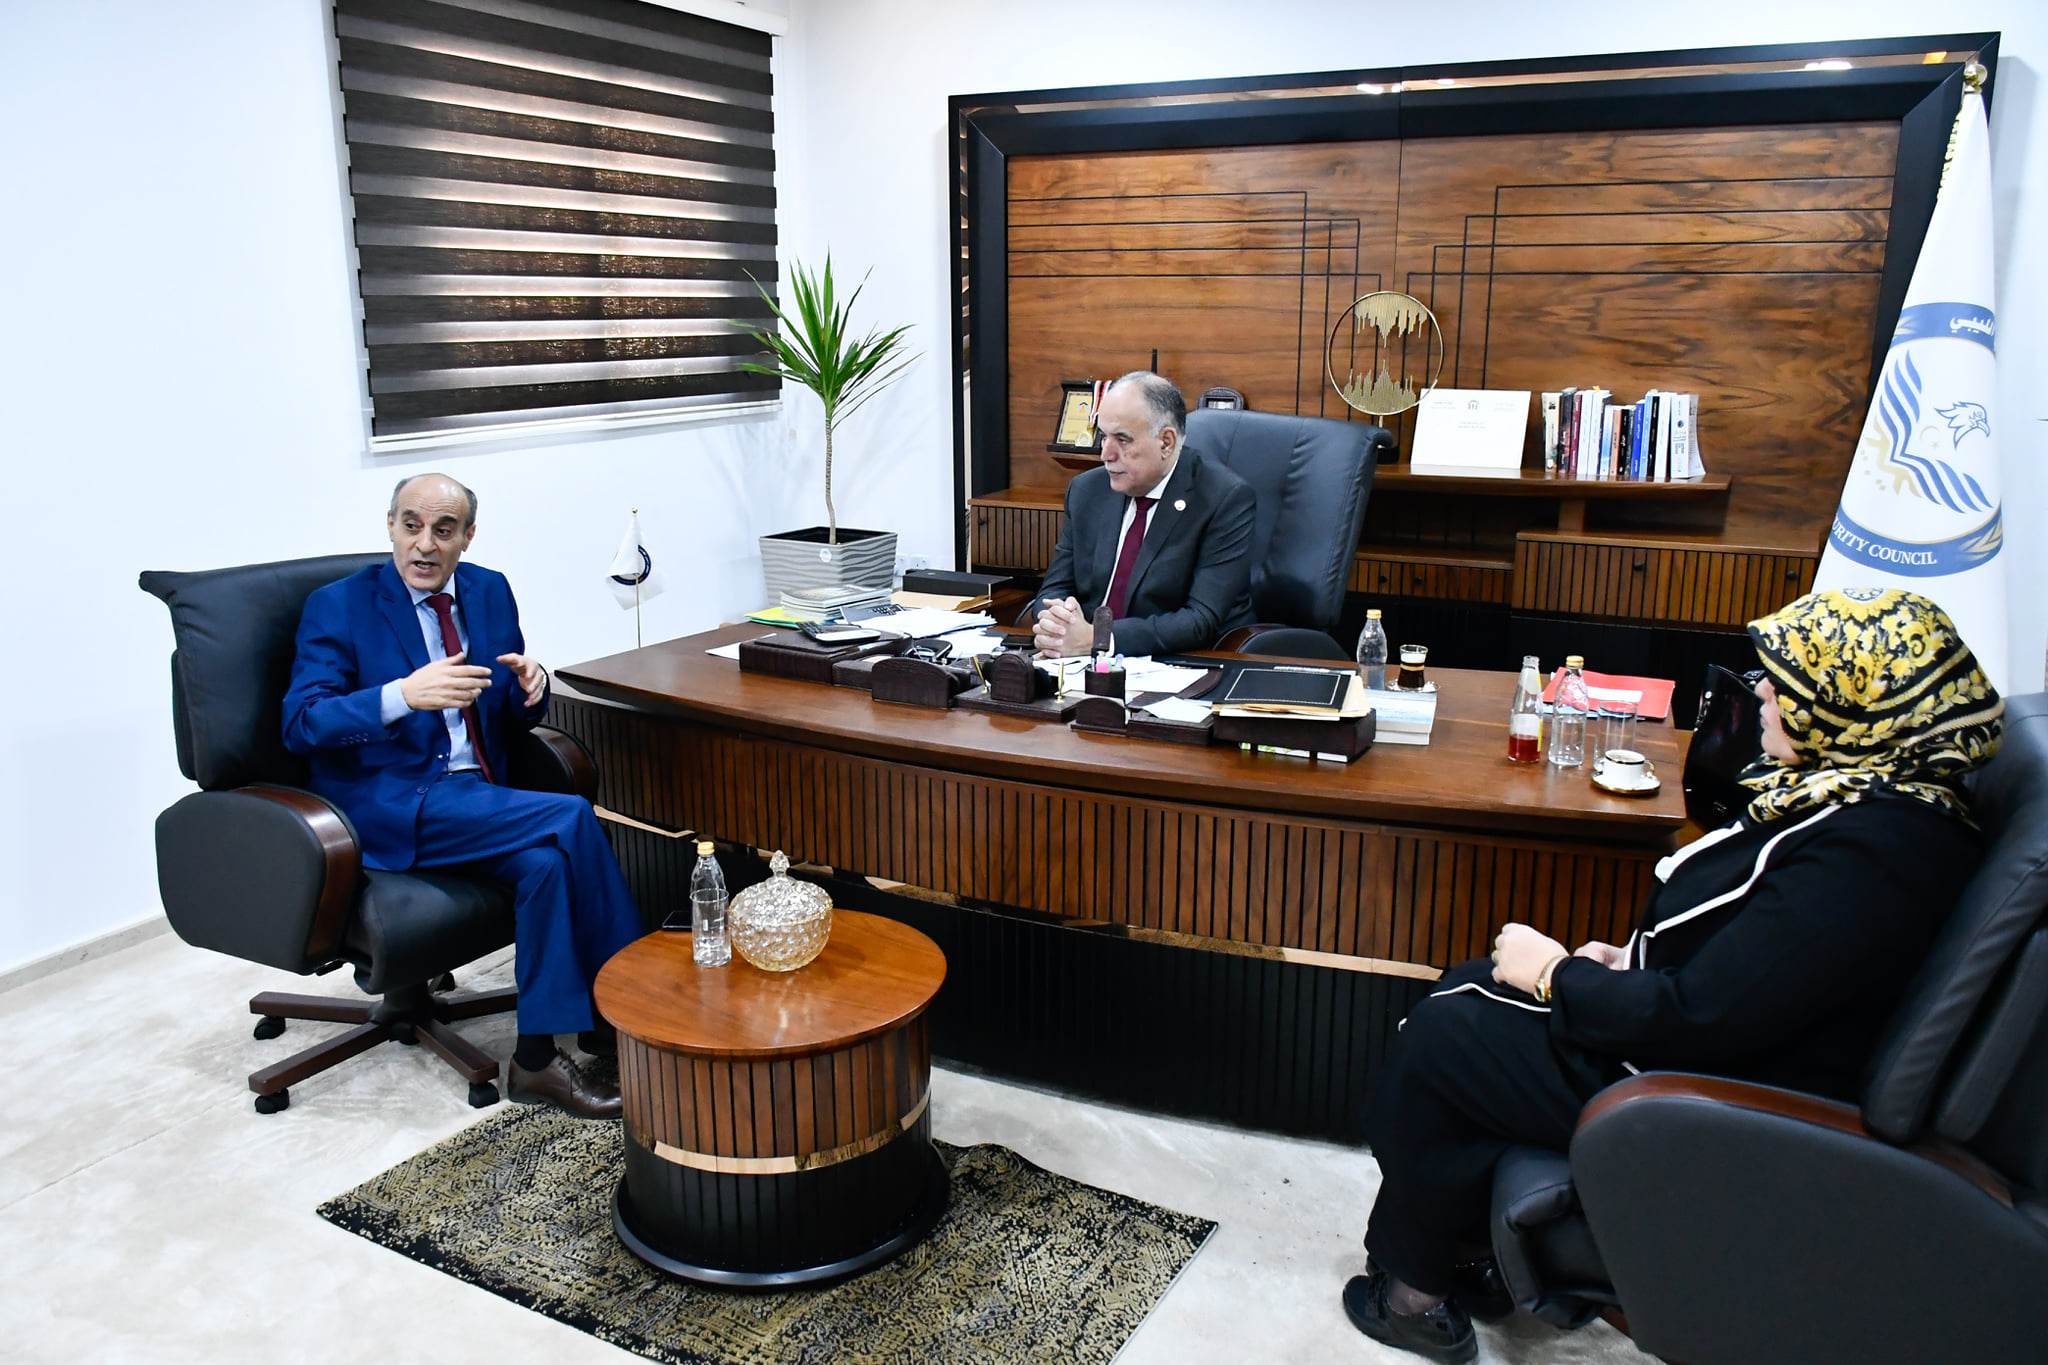 بوشناف في حواره مع (وال) : هناك تصور خاطئ لمفهوم ومهام مجلس الأمن القومي الليبي